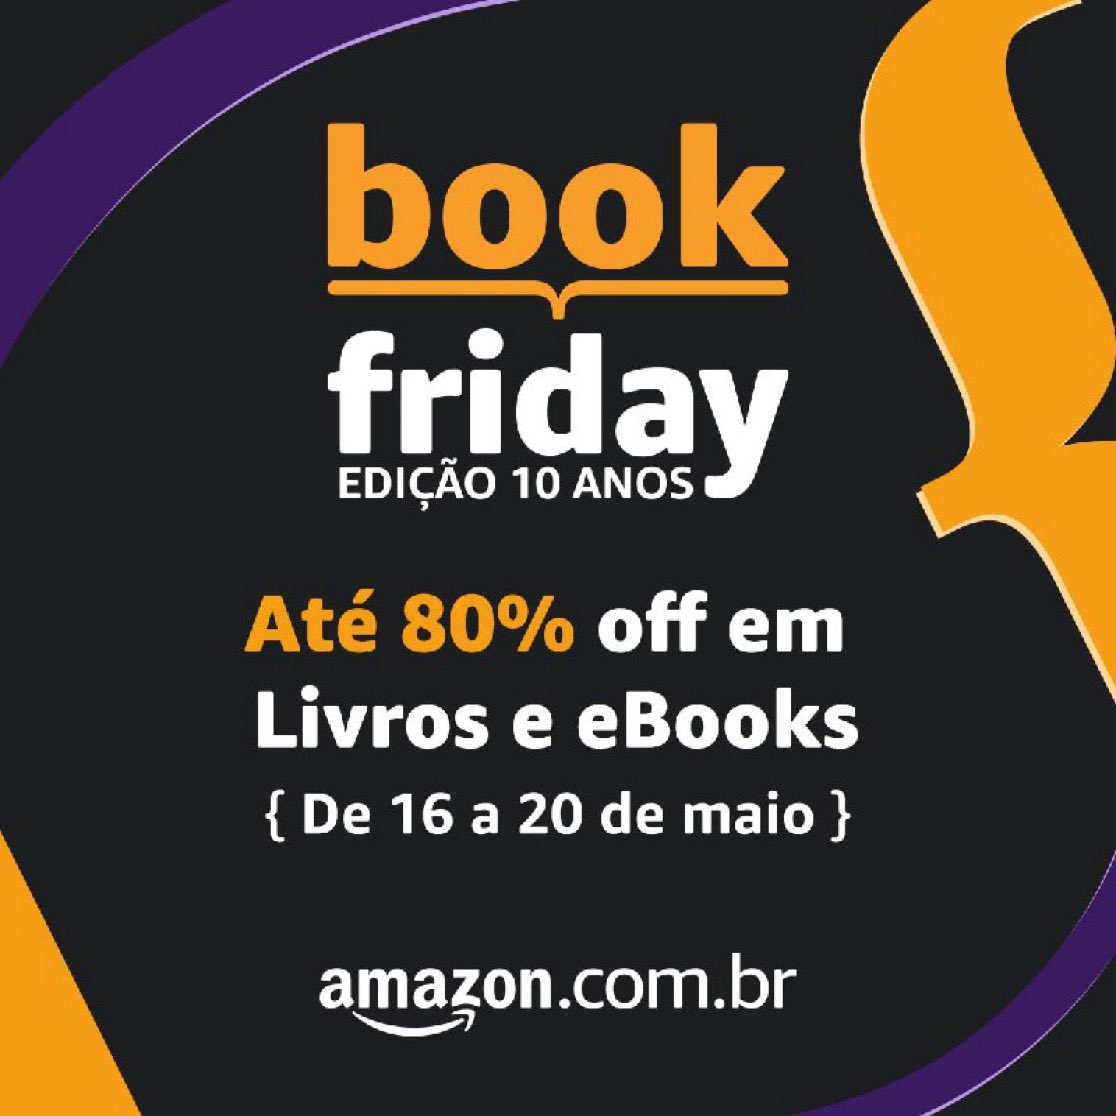 CUPONS DE LIVROS NA BOOK FRIDAY 🔥

➡️40%off em Livros Selecionados
🔗amzn.to/3V4l0s7 
🎟️LIVROS40OFF (No app)
 
➡️Compre 3 e ganhe 20% off no mais barato
🔗amzn.to/3wHzCEz 
🎟️BOOKS20   
 
➡️40%off em Livros Importados
🔗amzn.to/4bzXnNO 
🎟️IMPORTADOS40